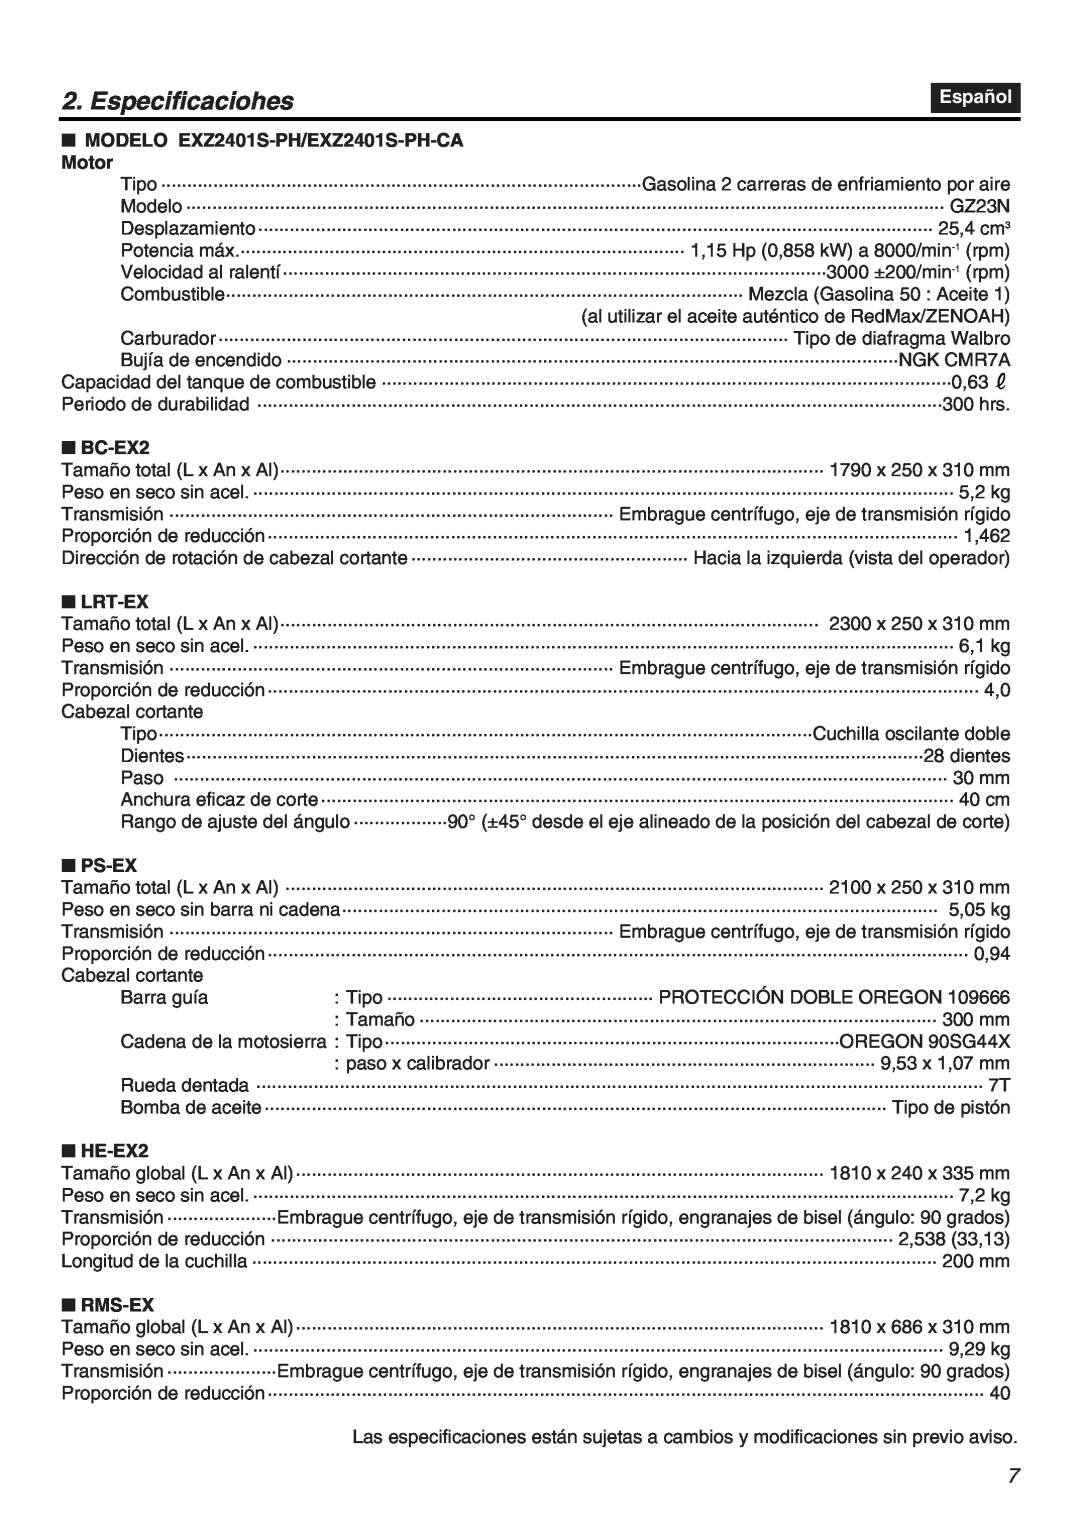 RedMax EXZ2401S-PH-CA manual Especificaciohes, Español, Cabezal cortante, Barra guía 